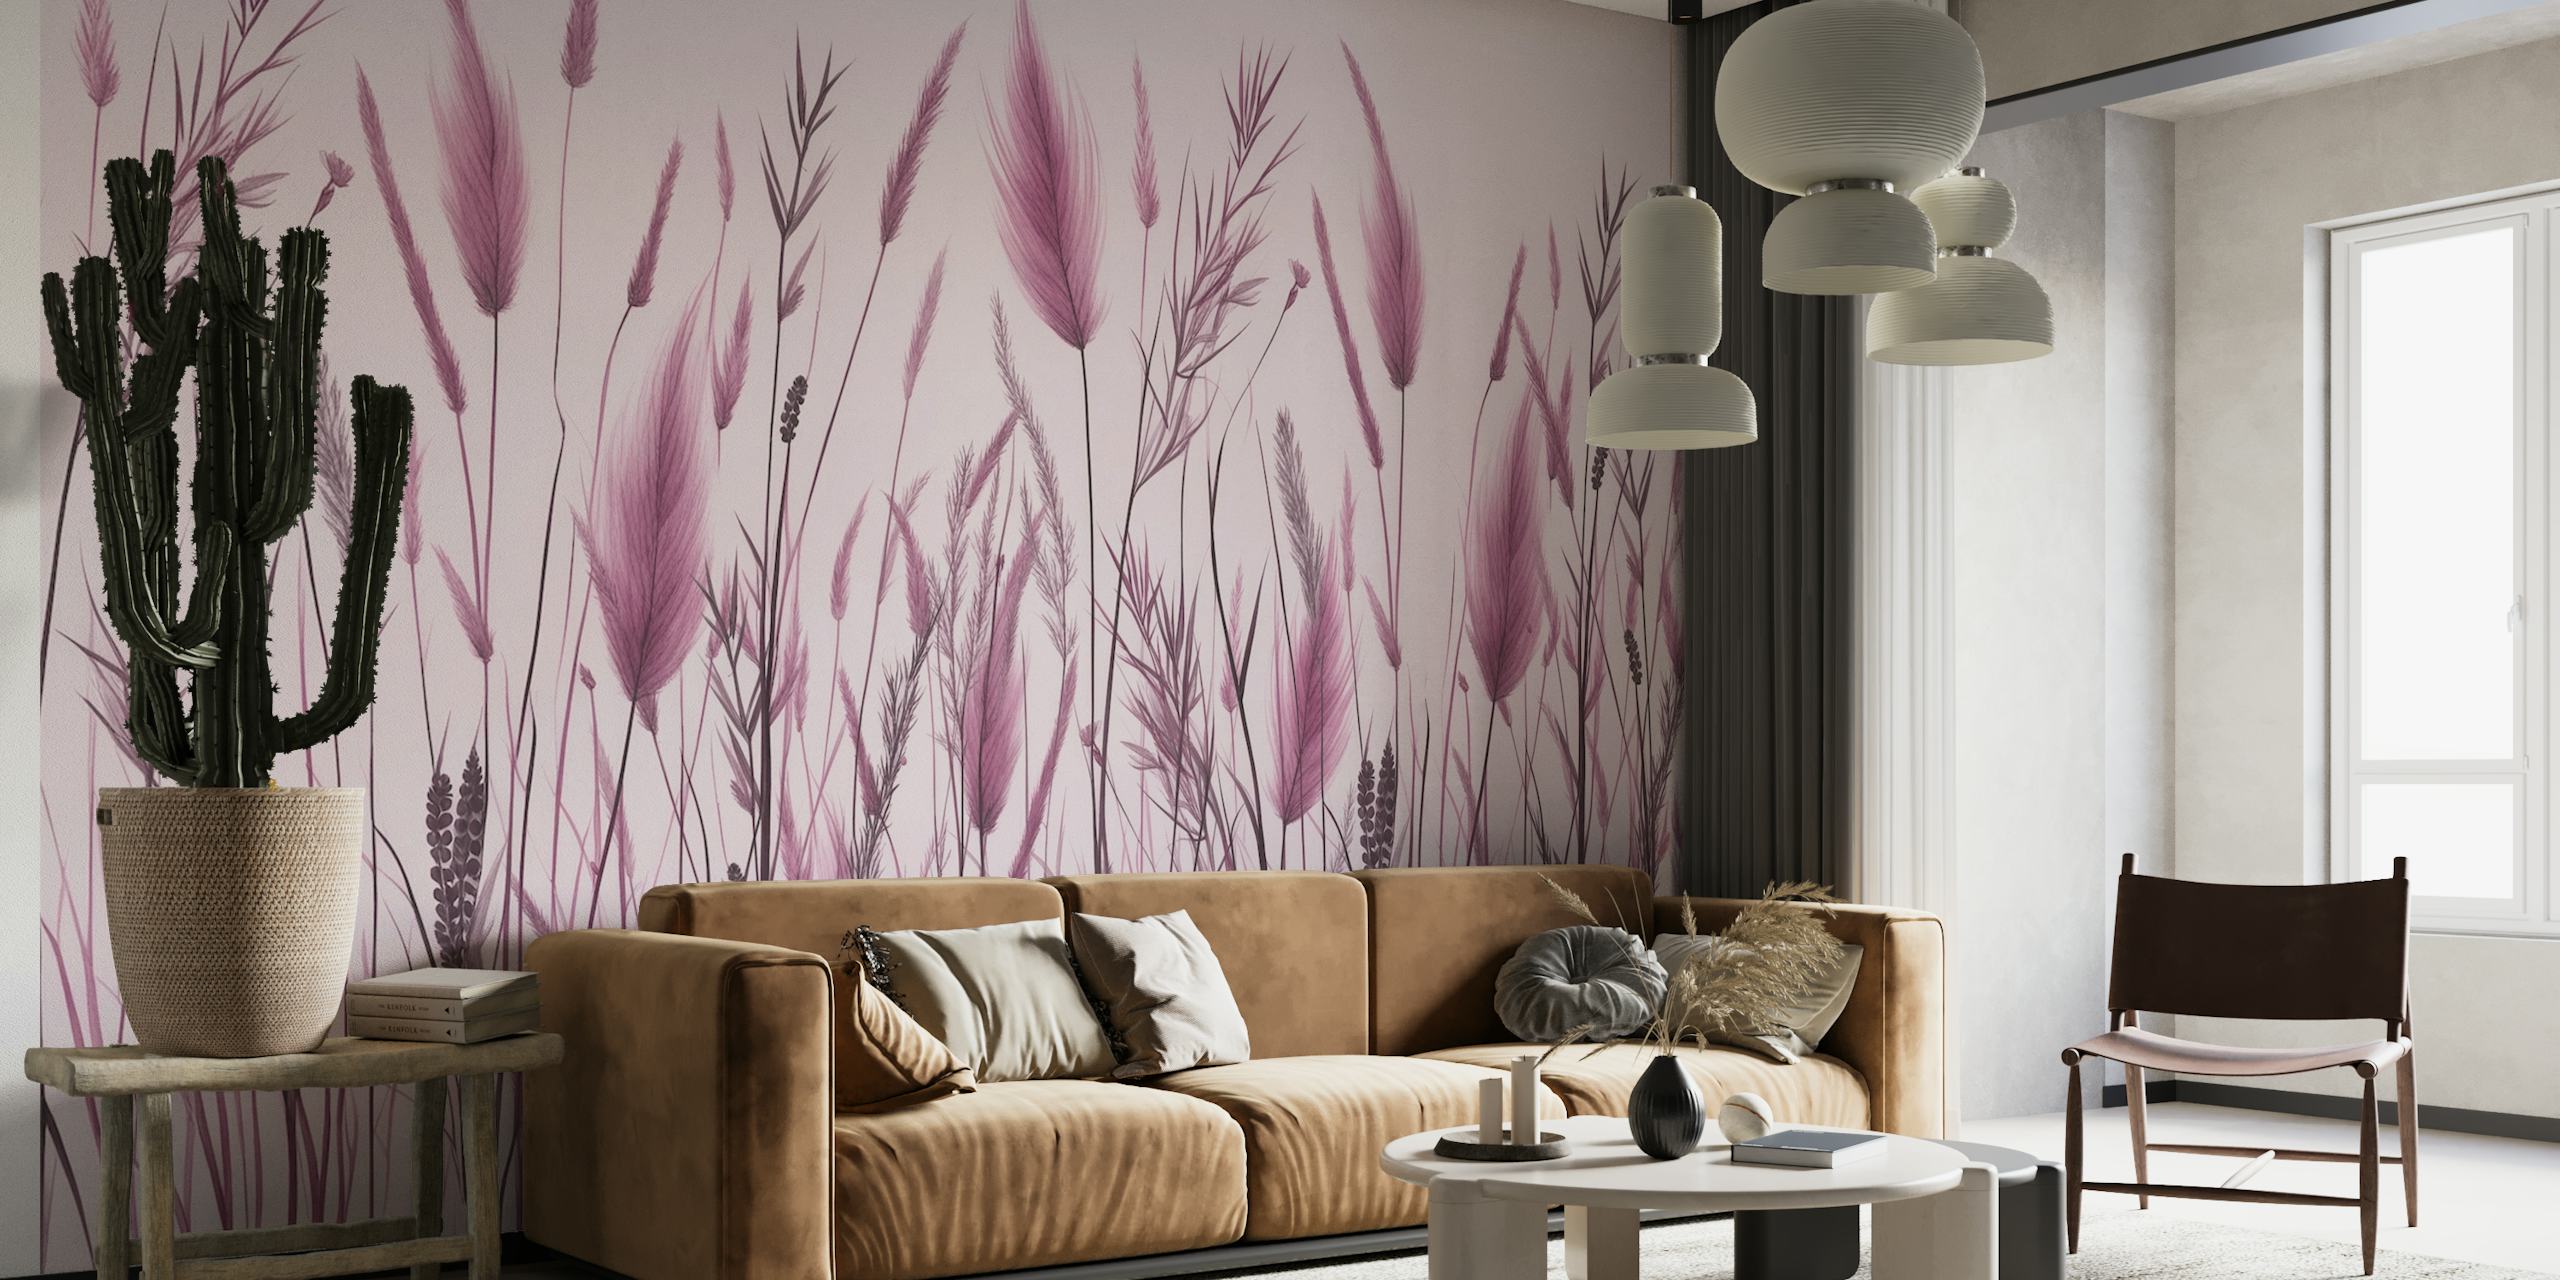 Monochromatische roze en grijze botanische muurschildering van wild gras